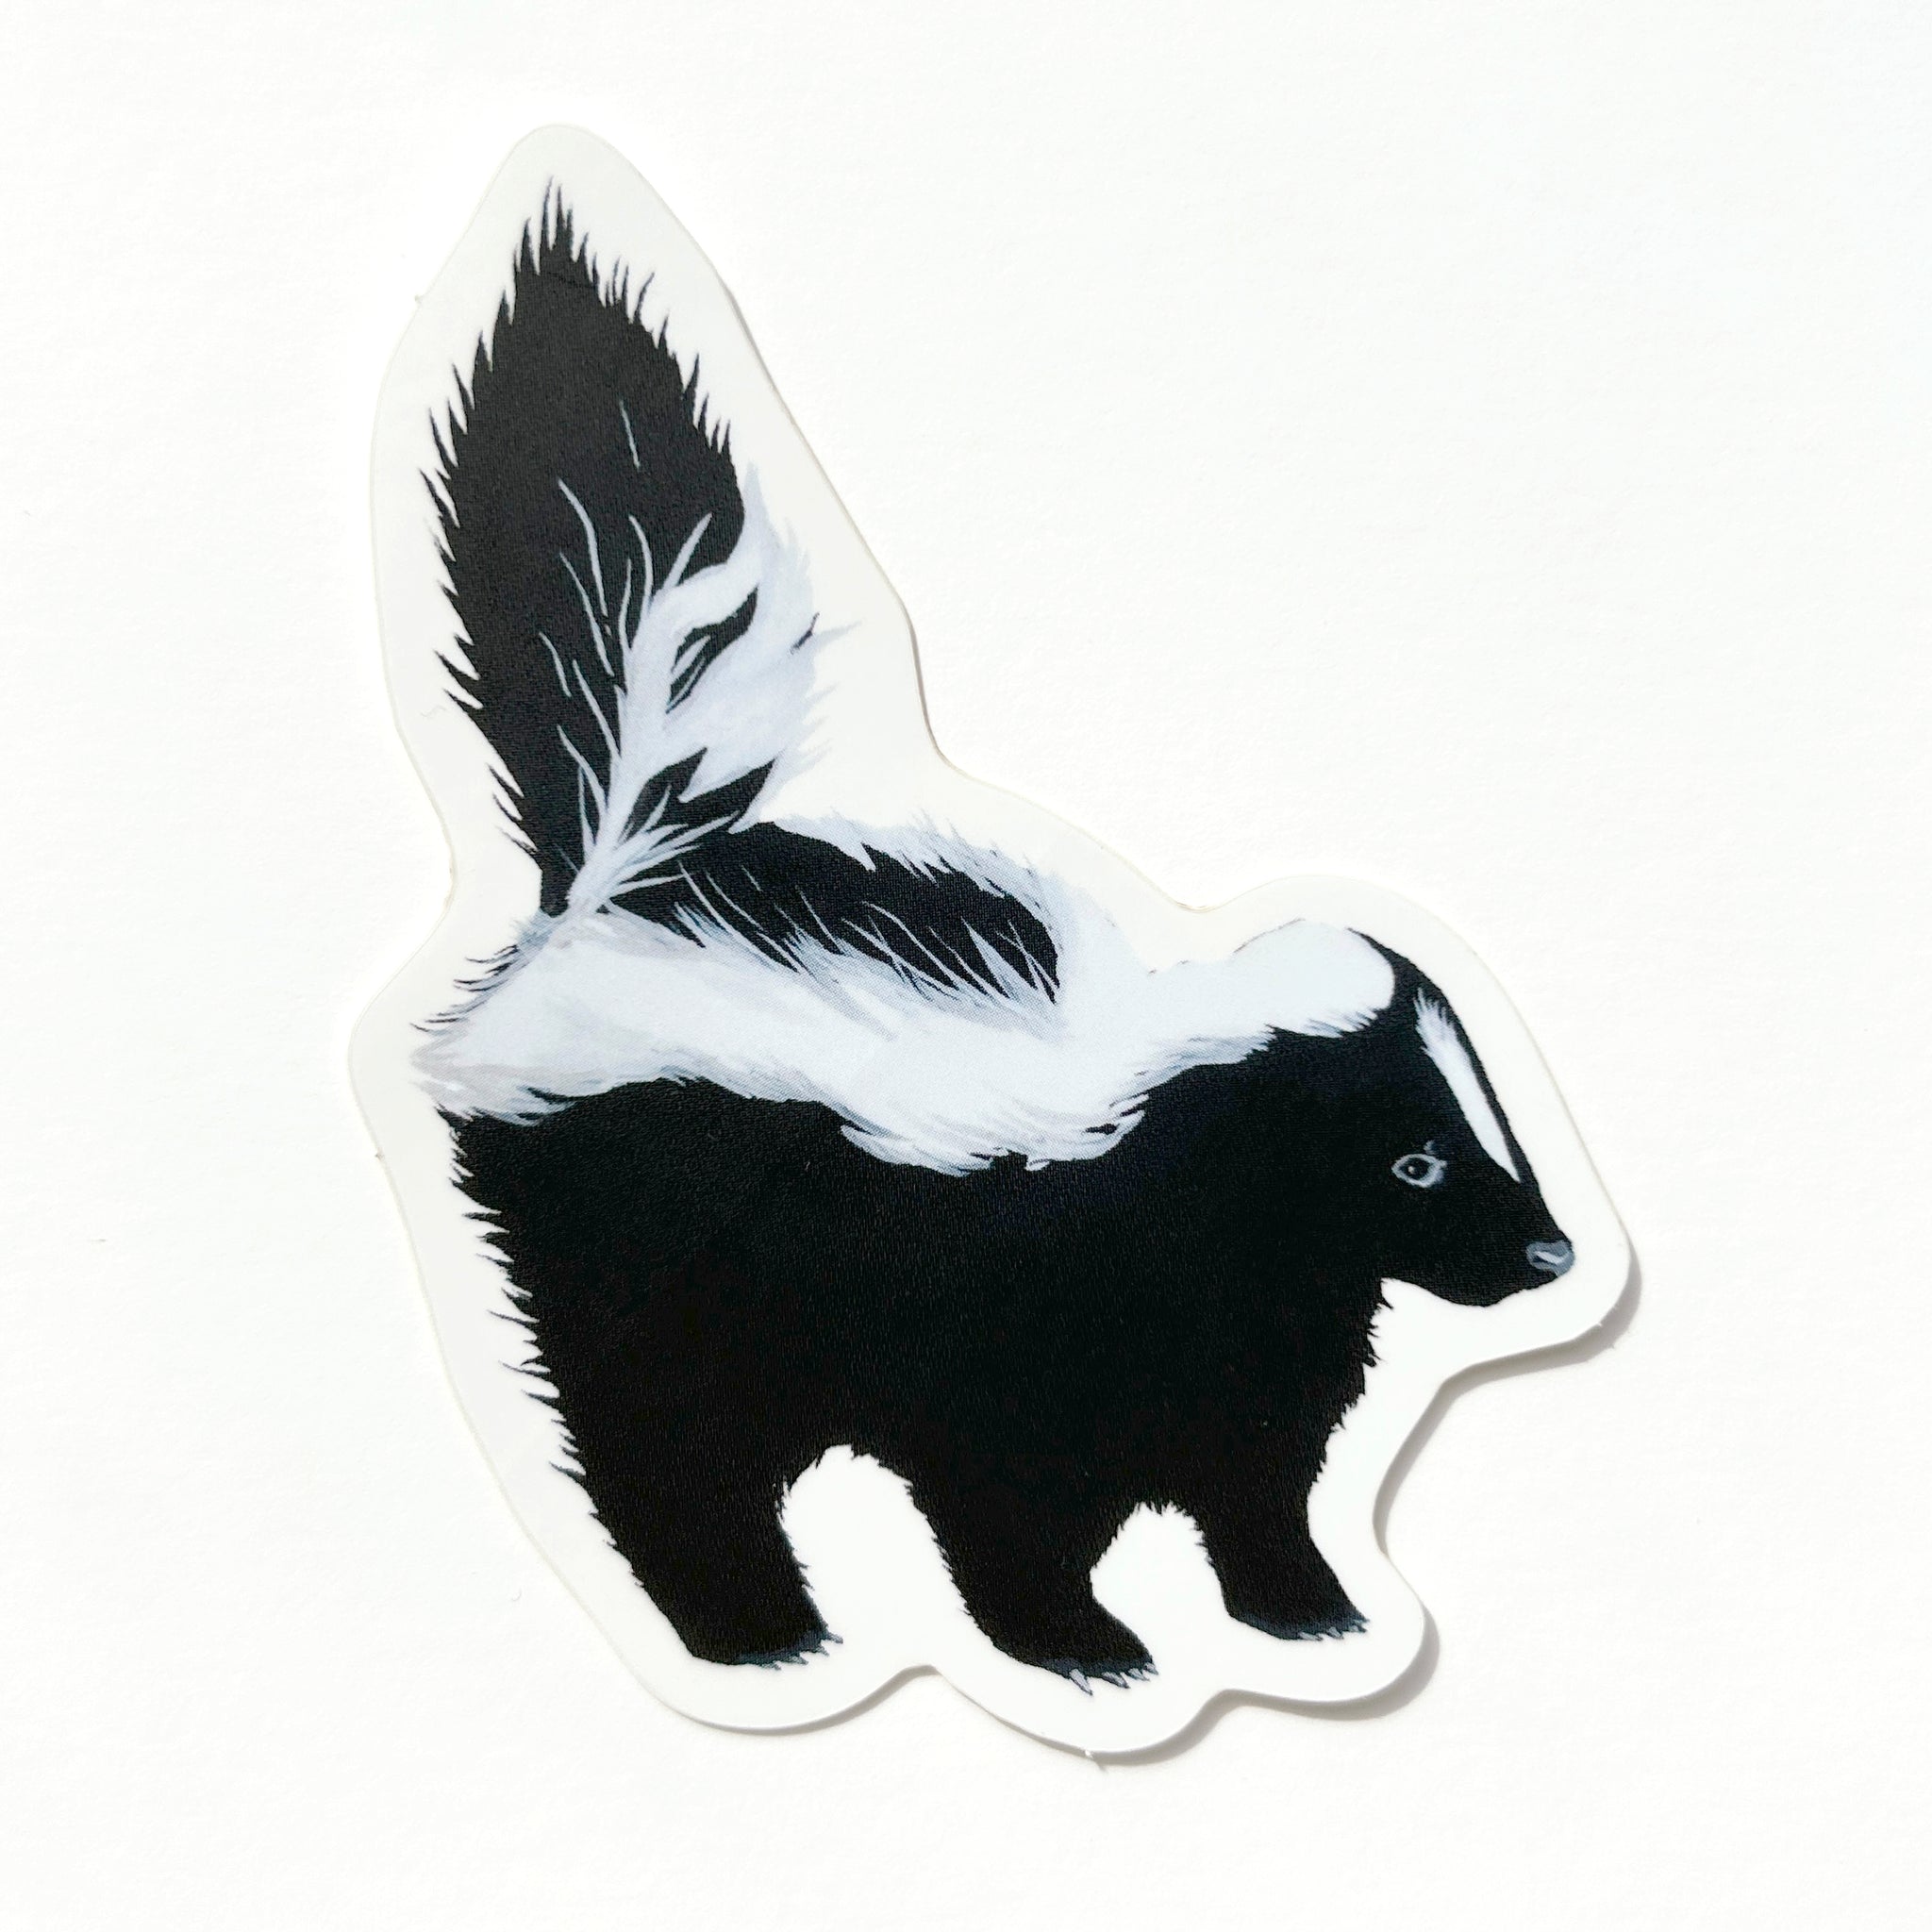 Skunk Sticker